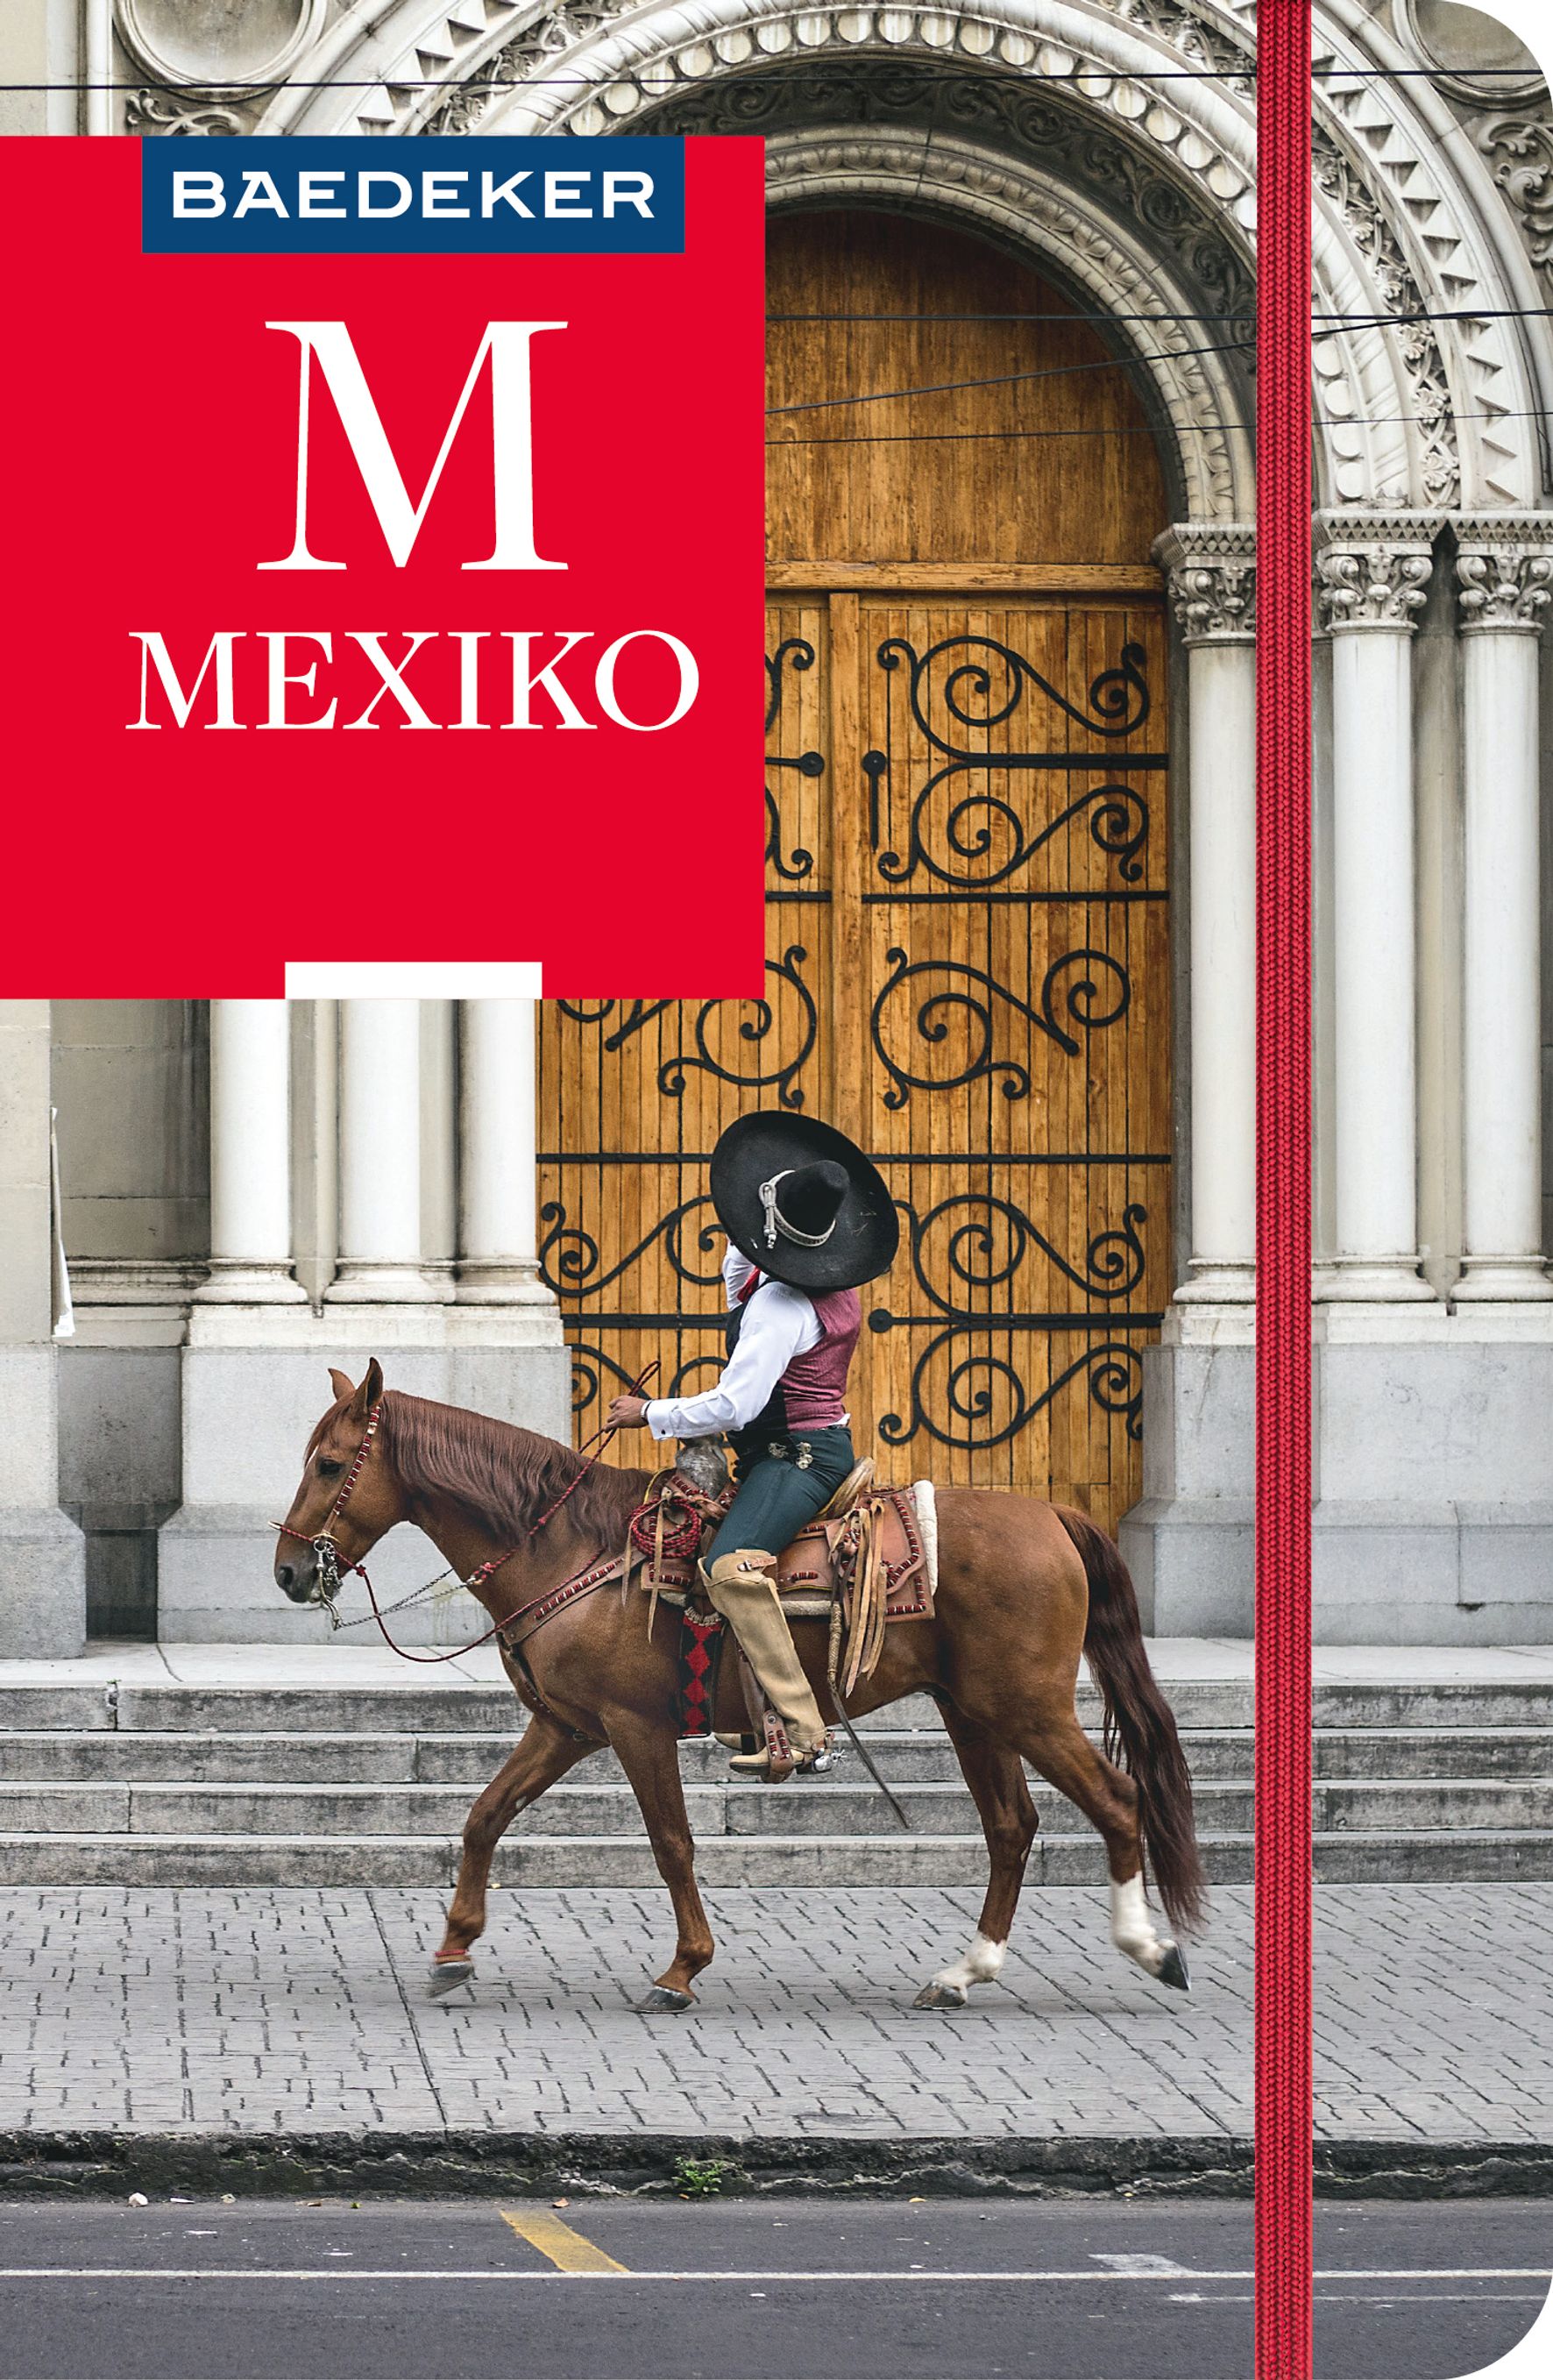 Baedeker Mexiko